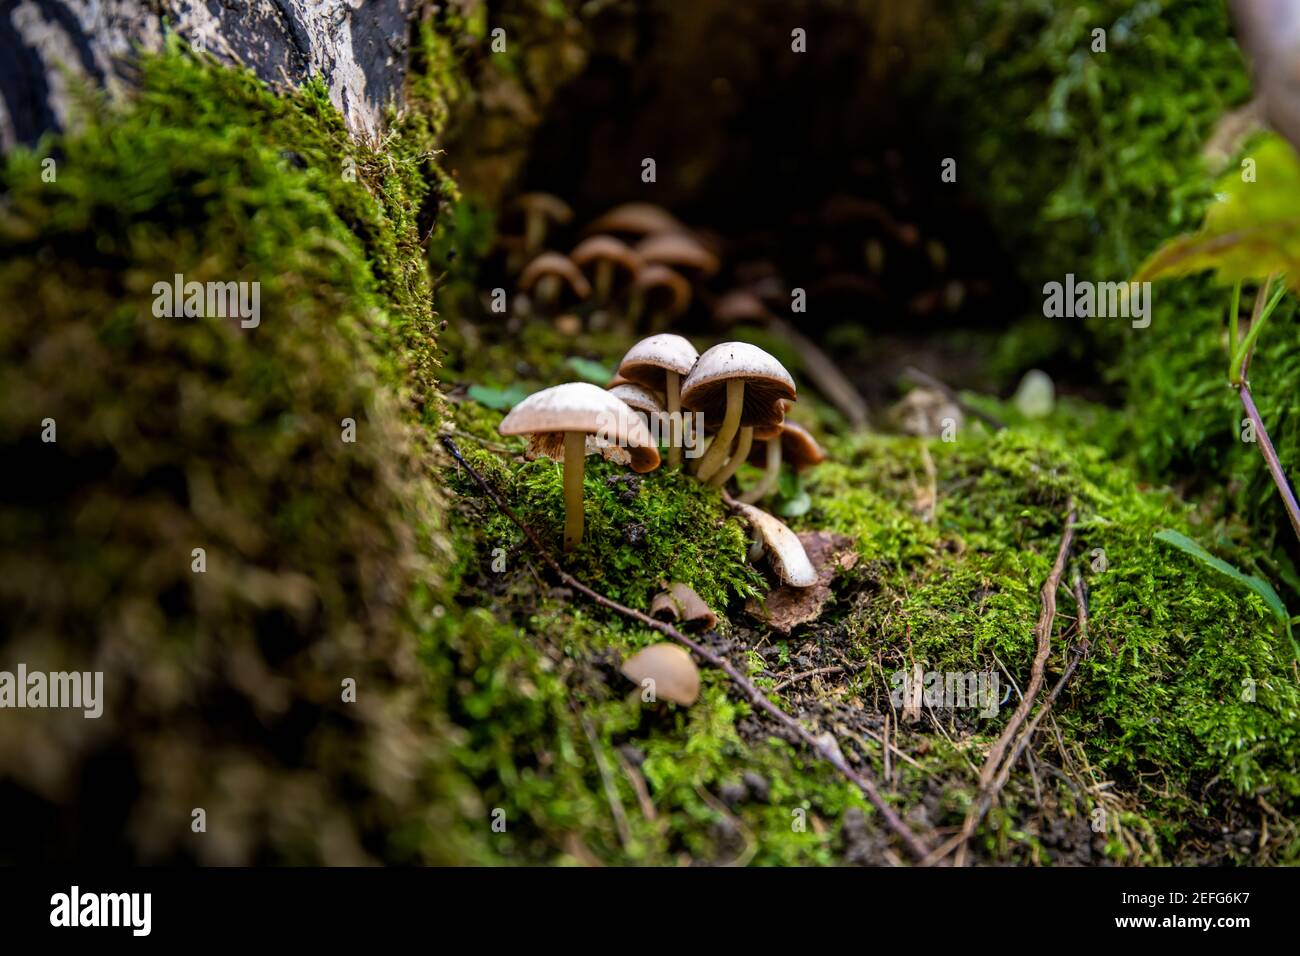 Tephrocybe inolens mushroom or fungus - 'Geruchloses Graublatt' - inedible mushroom growing in wood trunk root cave Stock Photo